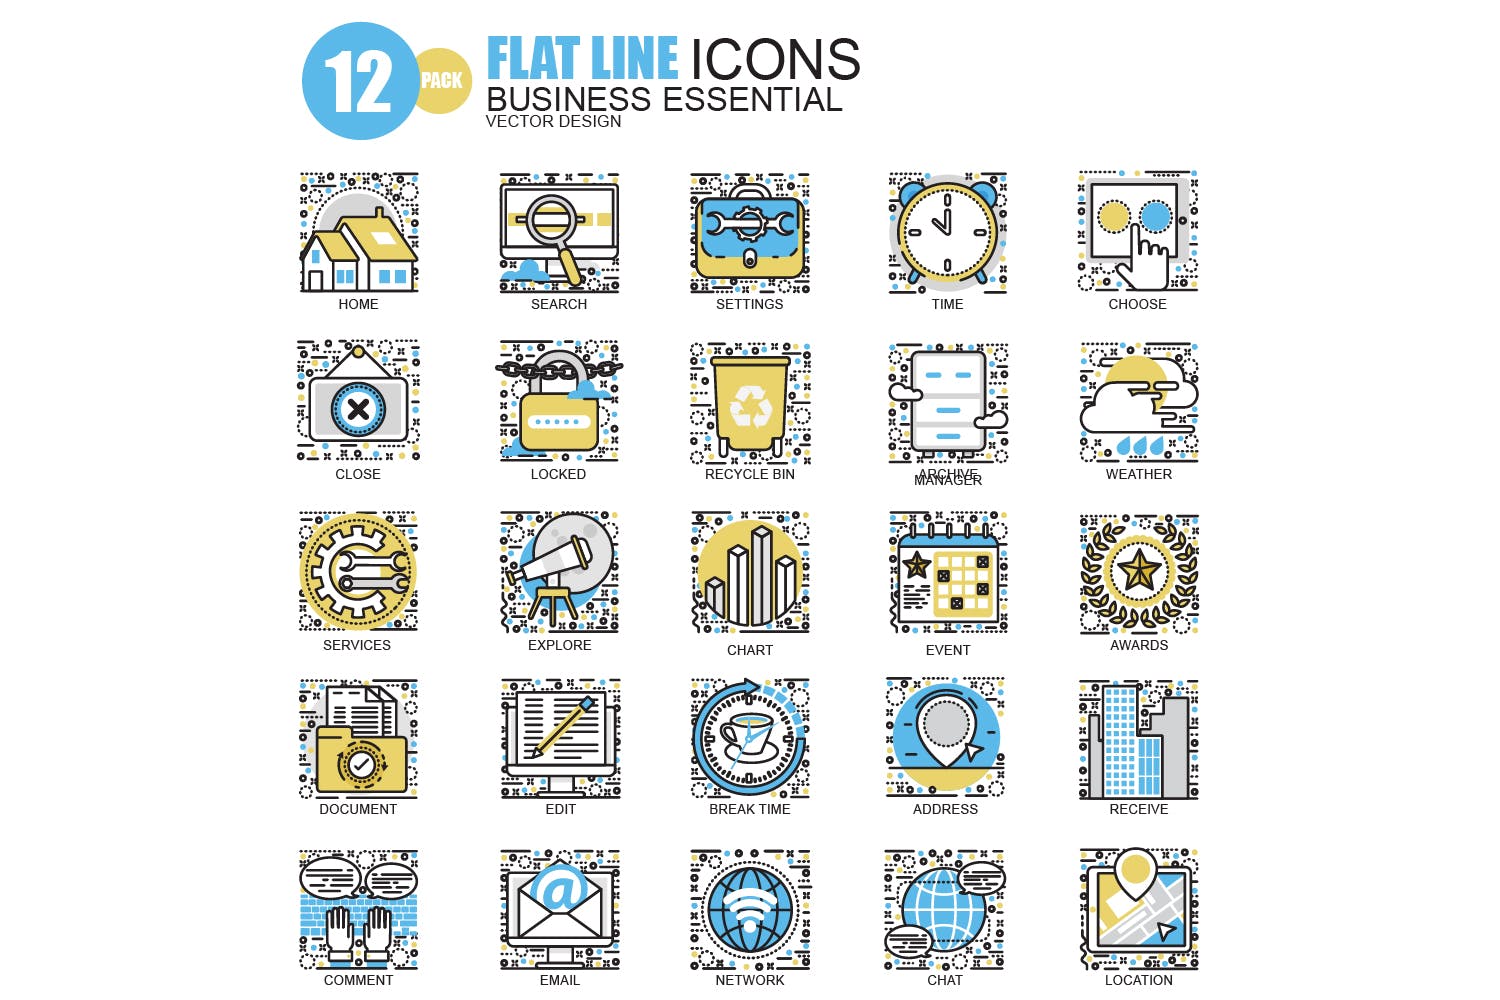 150枚概念主题扁平设计风格矢量线性图标 Line icons插图(6)